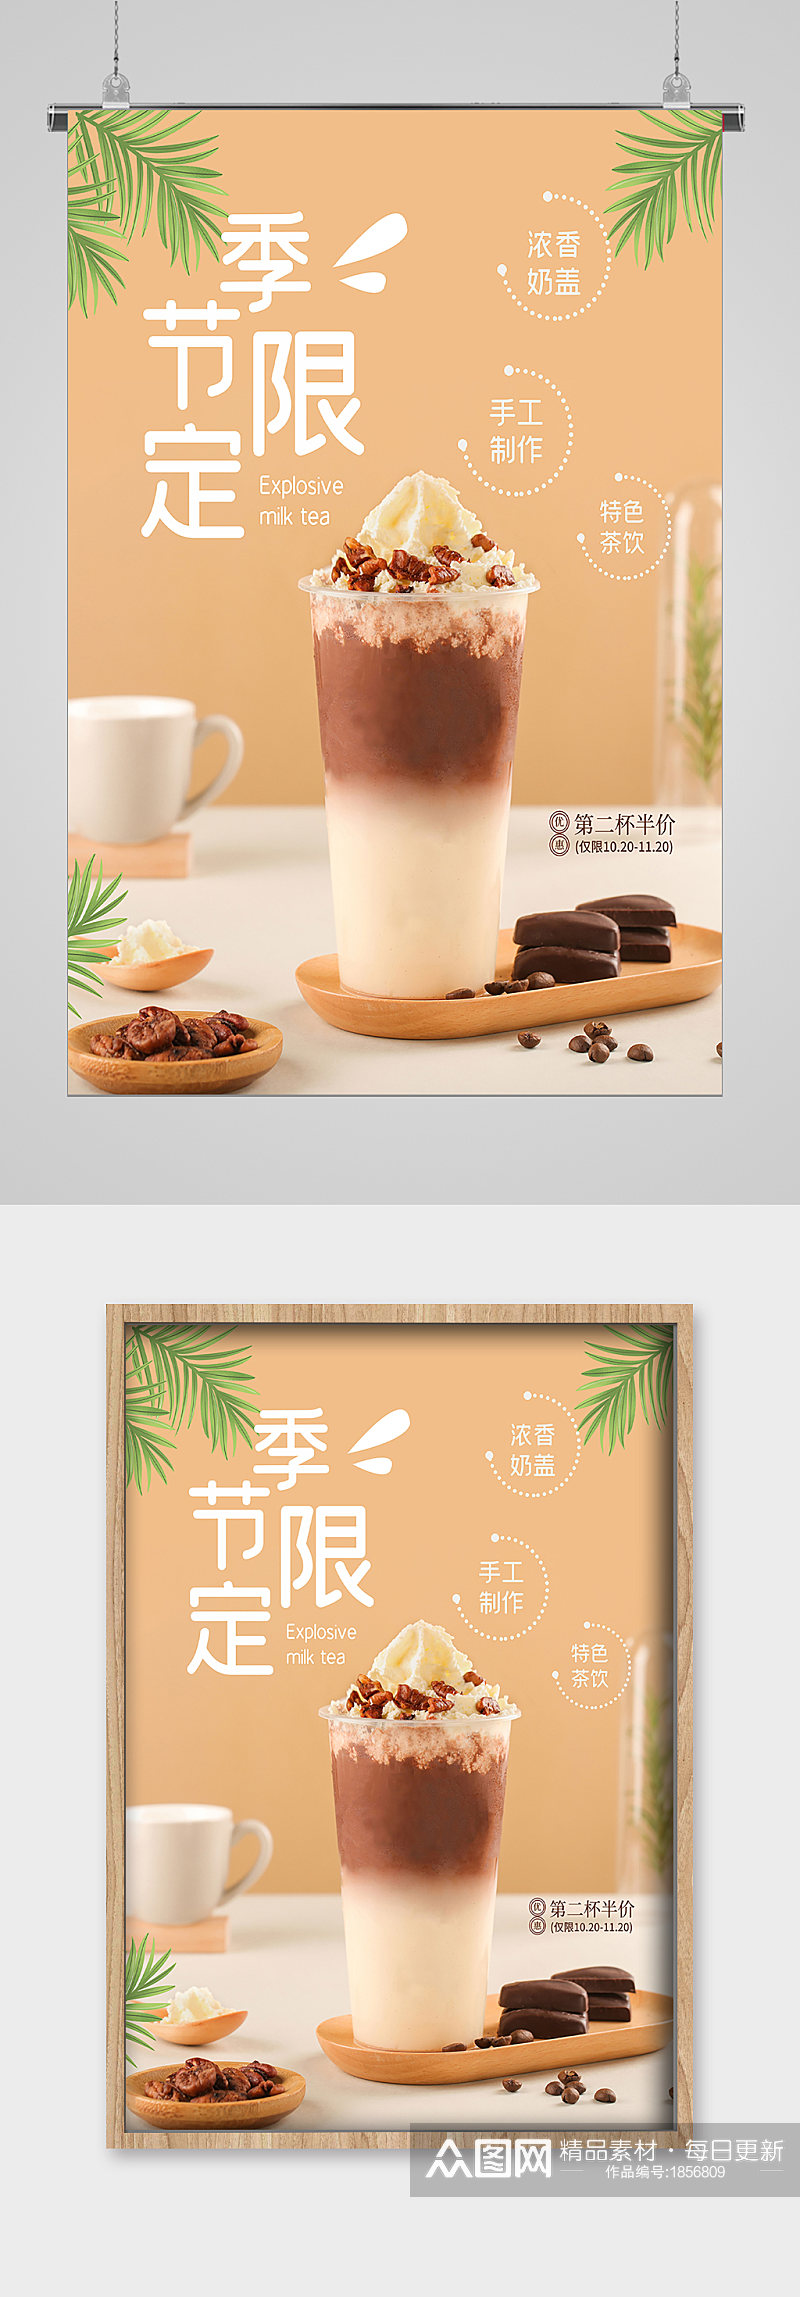 夏日冷饮季节限定奶茶宣传海报素材